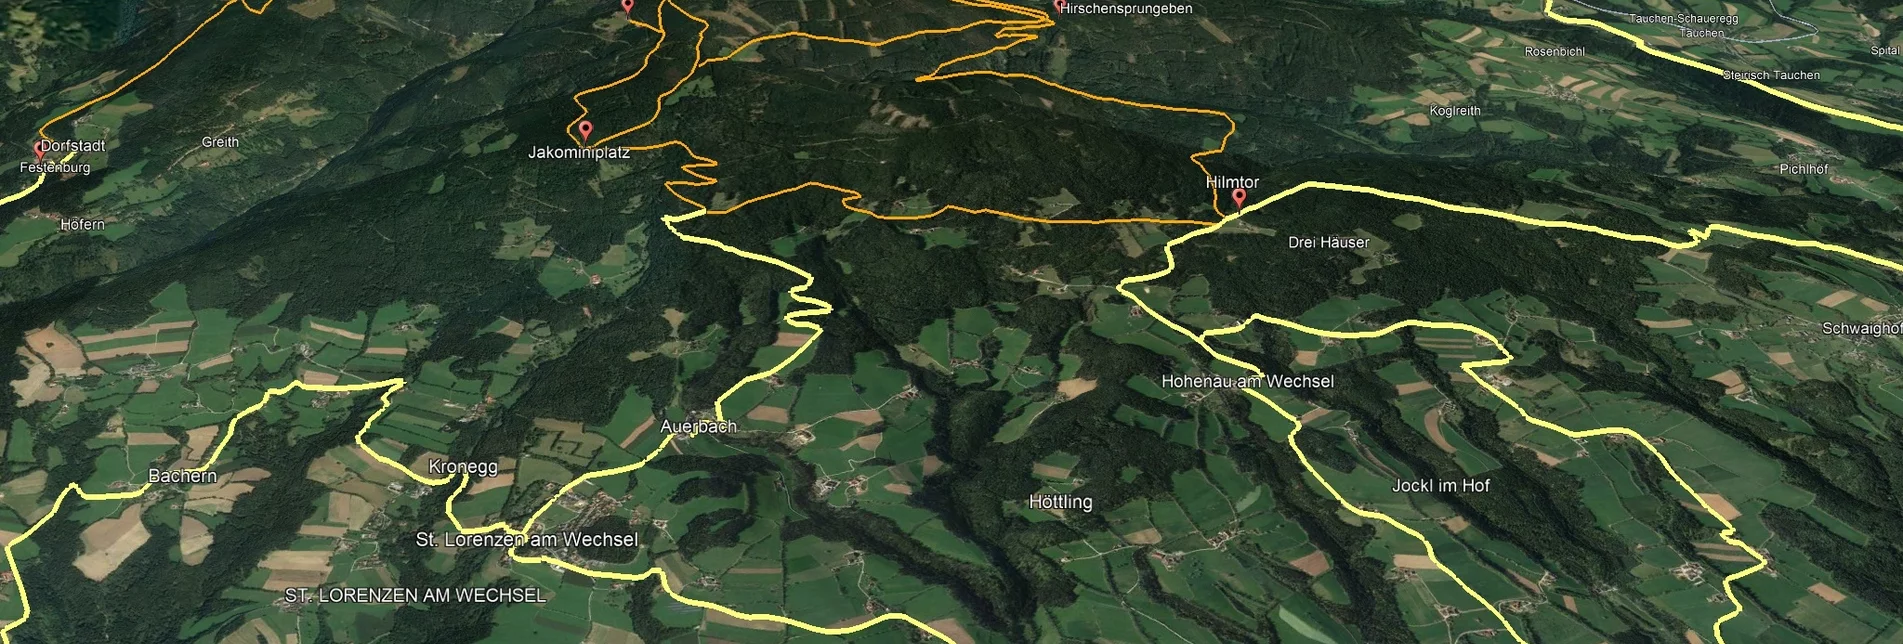 Mountain Biking Styrian Wexl Trails - Kogelweg Route - Touren-Impression #1 | © Verein Tourismusentwicklung Steirischer Wechsel